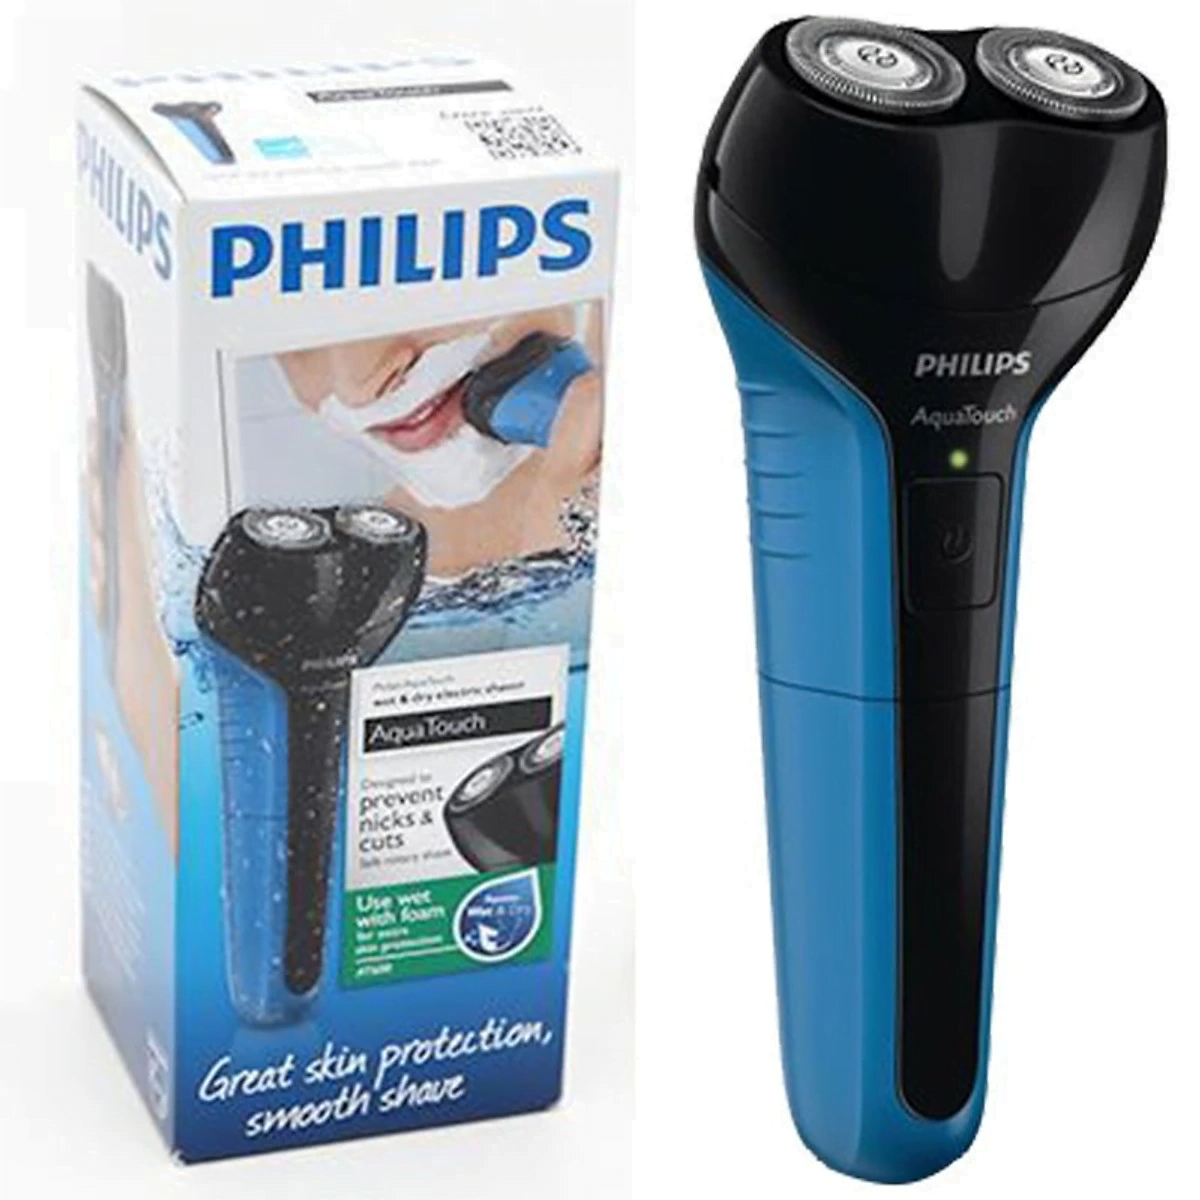 Máy cạo râu Philips AT600